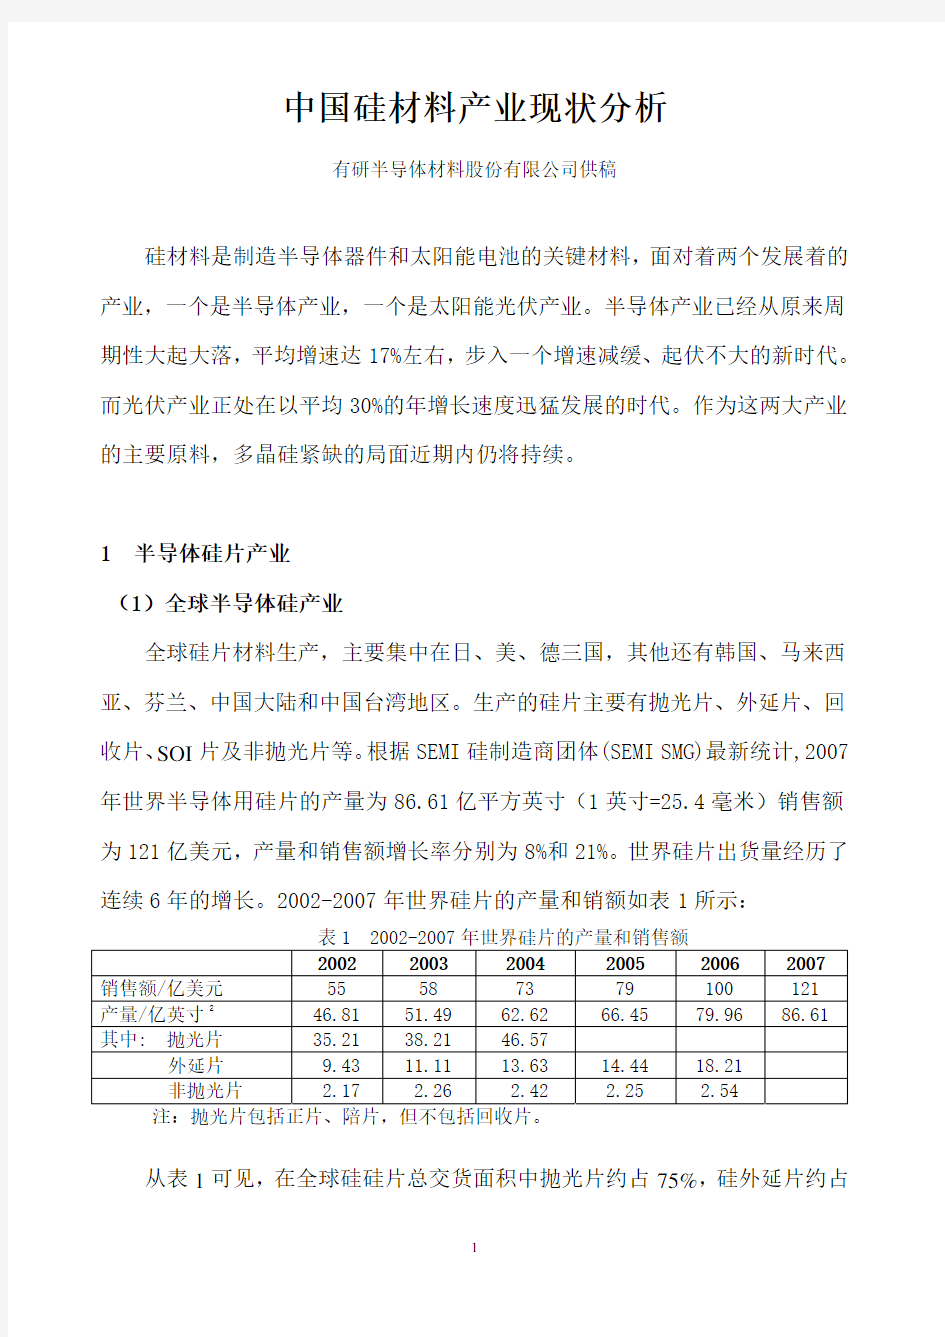 中国硅材料产业现状分析